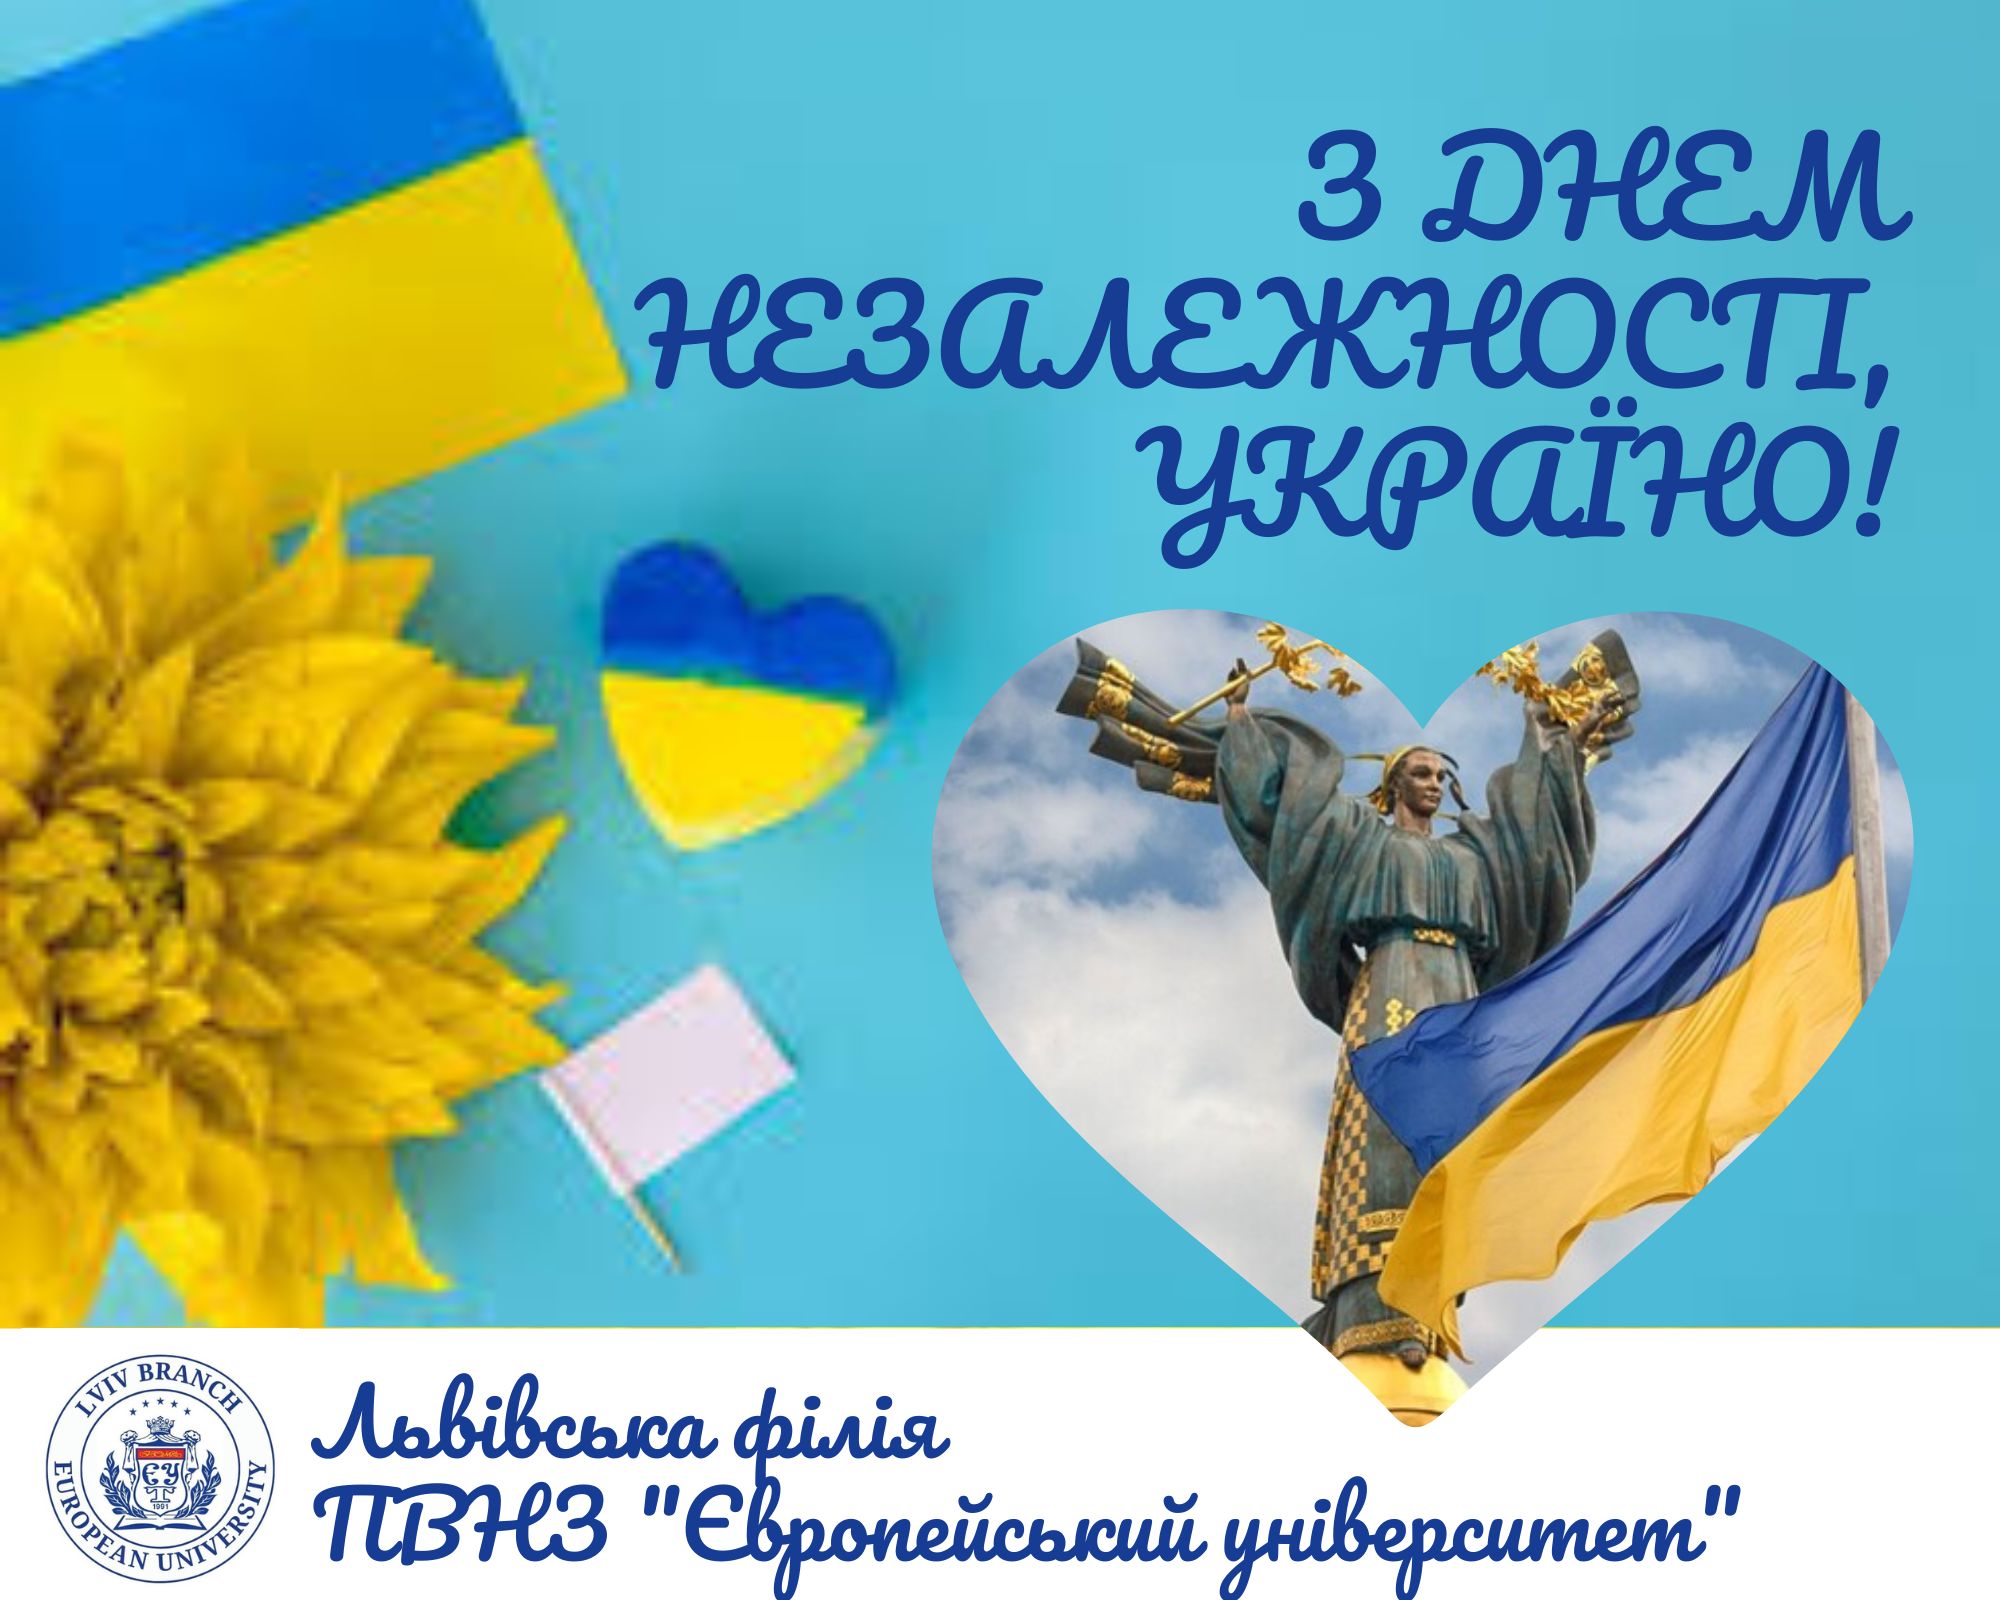 З Днем Незалежності вільна та незламна Україно!  